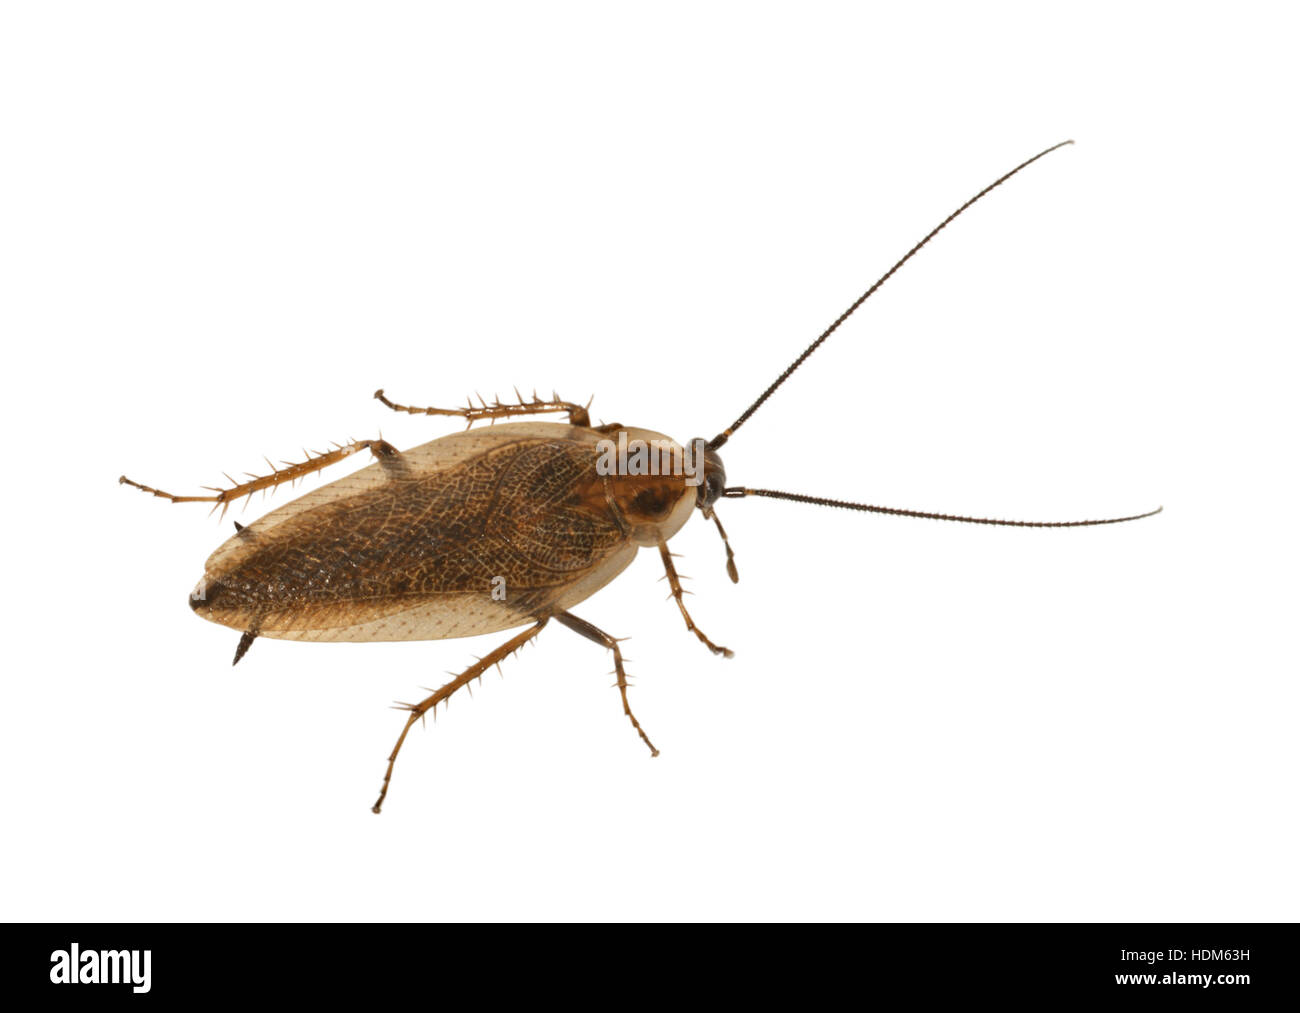 Cucaracha areneros - Ectobius lapponicus - macho Foto de stock